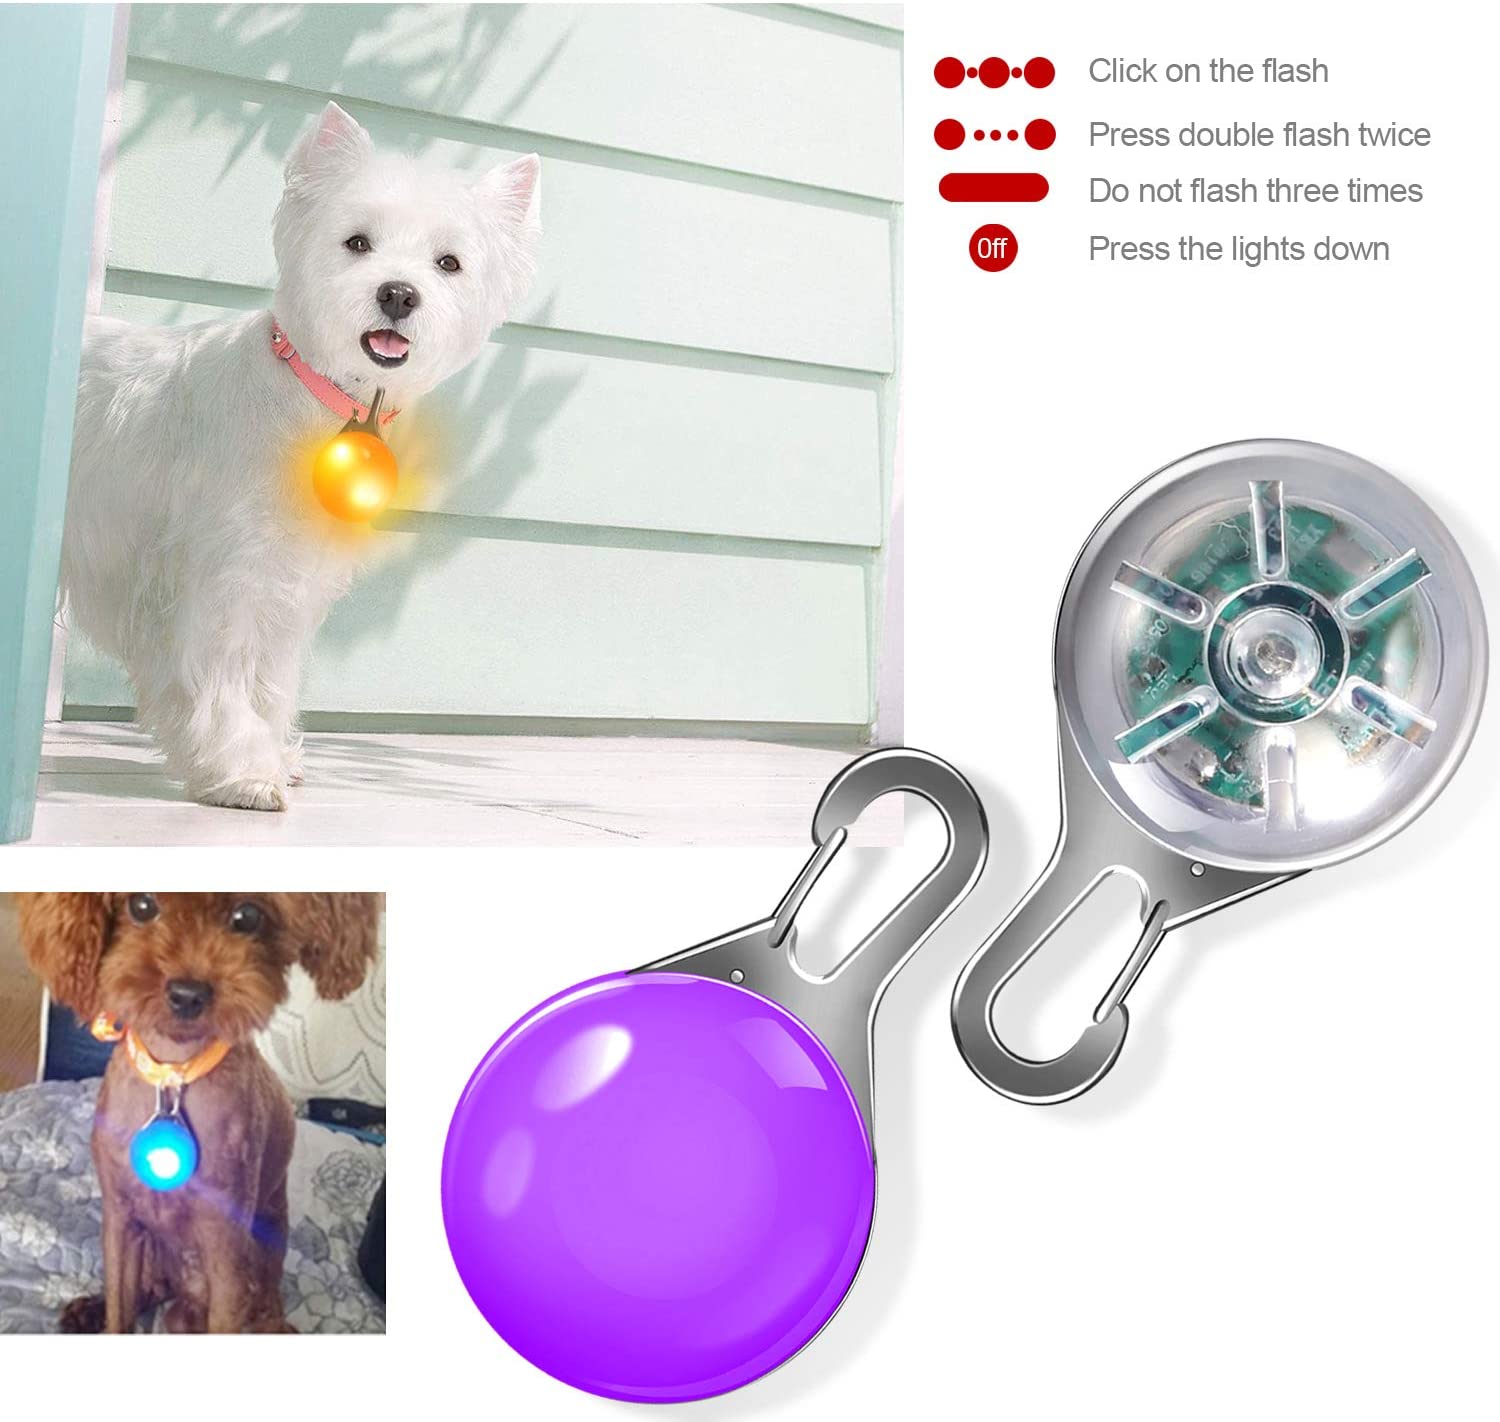  Collar Luces LED, Yosemy 8pcs Clip-On Pet Luz Luminoso de Noche Impermeable Luces de Colores de Seguridad con Etiquetas de Identificación para Perros y Gatos para La Noche Caminar 